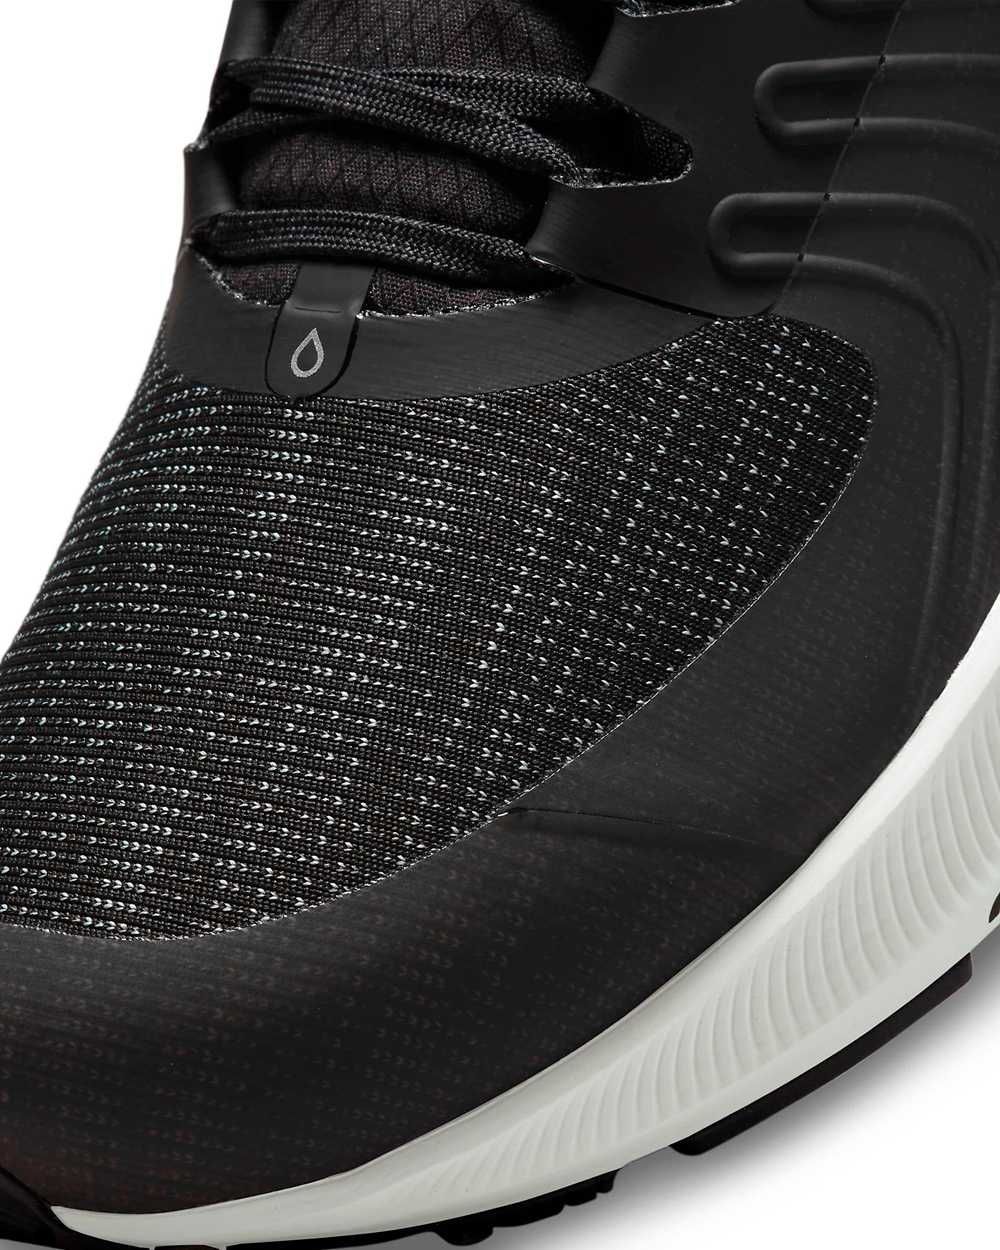 Buty męskie Nike Zoom Pegasus 38 Shield: różne rozmiary